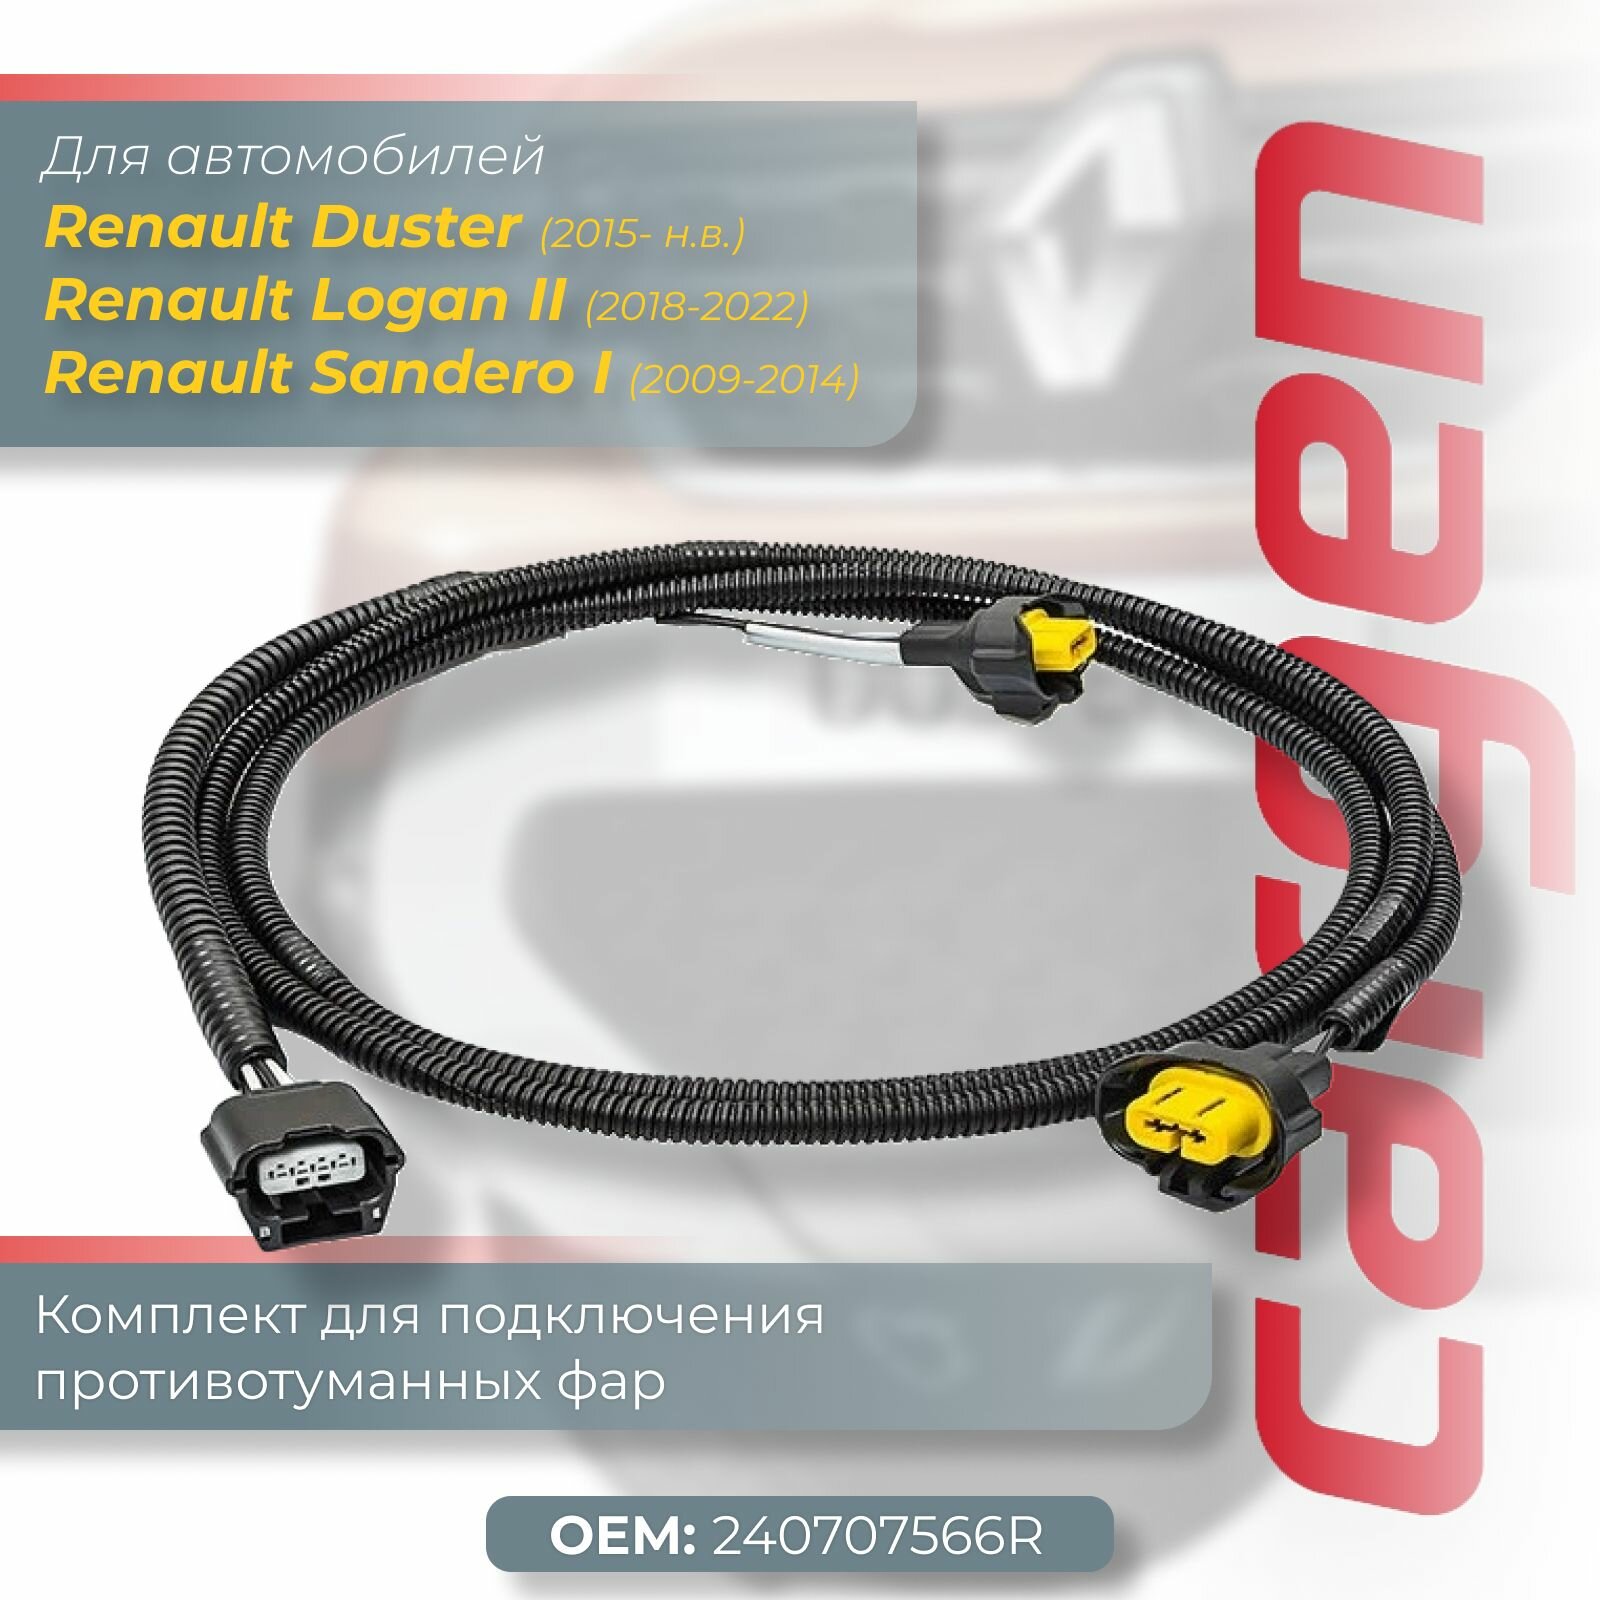 Комплект штатных жгутов проводов для подключения противотуманных фар Рено Дастер (Renault Duster) с 2015 / Рено Логан 2 (Renault Logan II) 2018-2022 / Сандеро (Sandero I) 2009-2014 ОЕМ: 240707566R